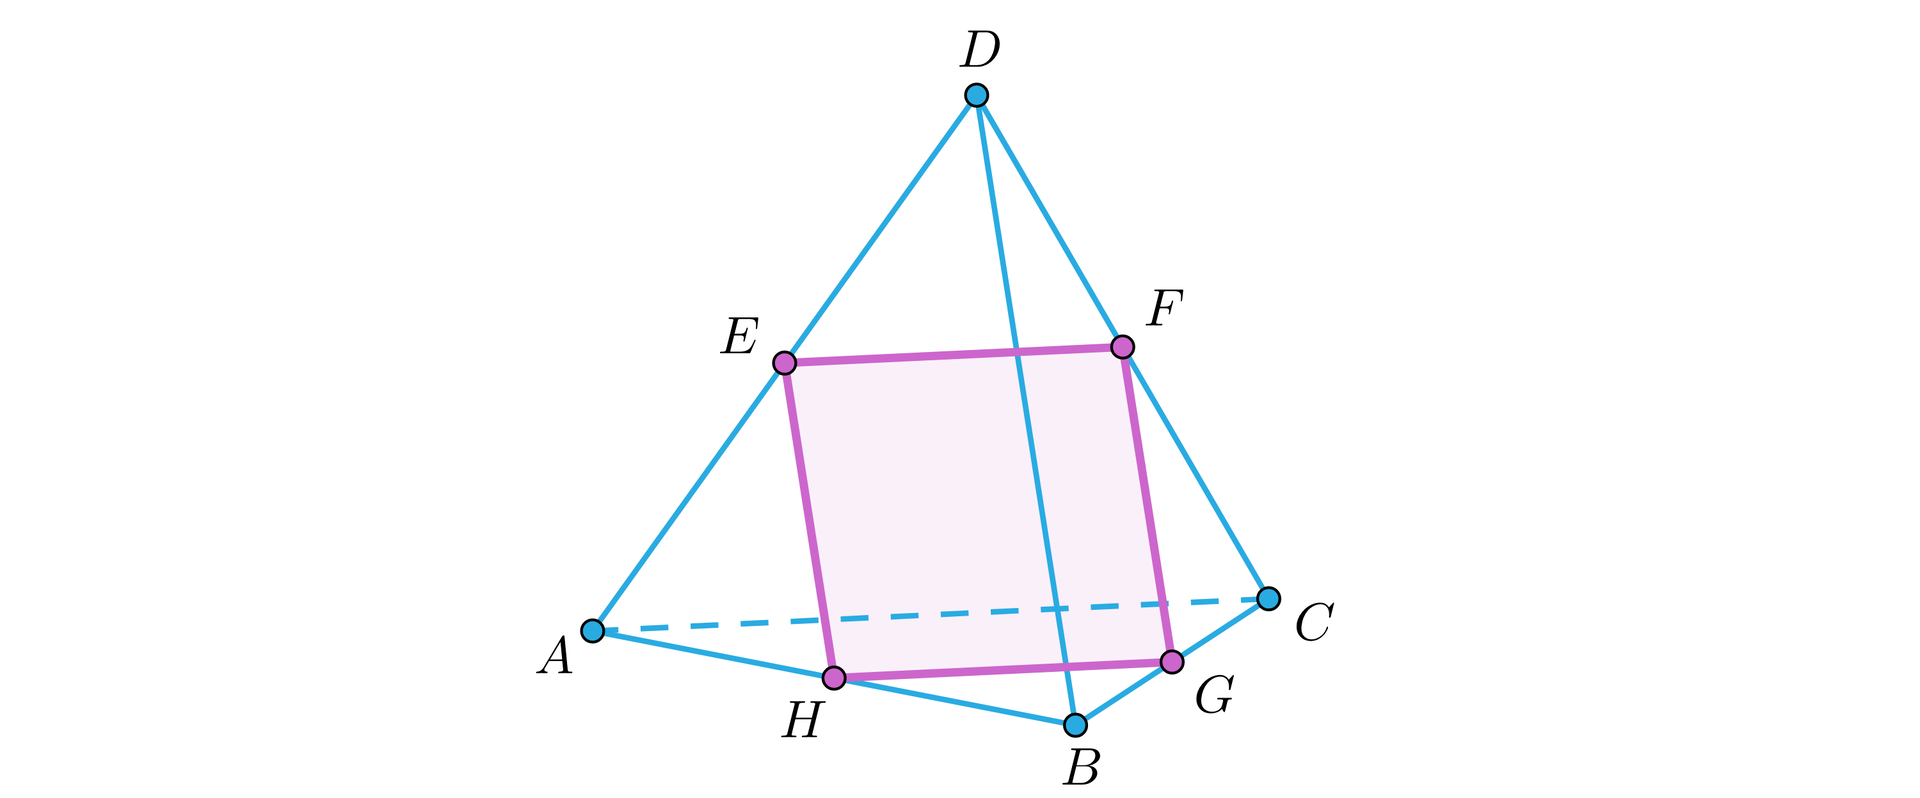 Ilustracja przedstawia czworościan foremny o wierzchołkach A B C D, który ustawiono w taki sposób, że ściana A B C jest podstawą a wierzchołek D wierzchołkiem górnym. W czworościanie zaznaczono przekrój w kształcie prostokąta o wierzchołkach E F G H, przy czym wierzchołek E leży na krawędzi AD, wierzchołek F na krawędzi BD, wierzchołek G na krawędzi BC, a wierzchołek H na krawędzi AB.